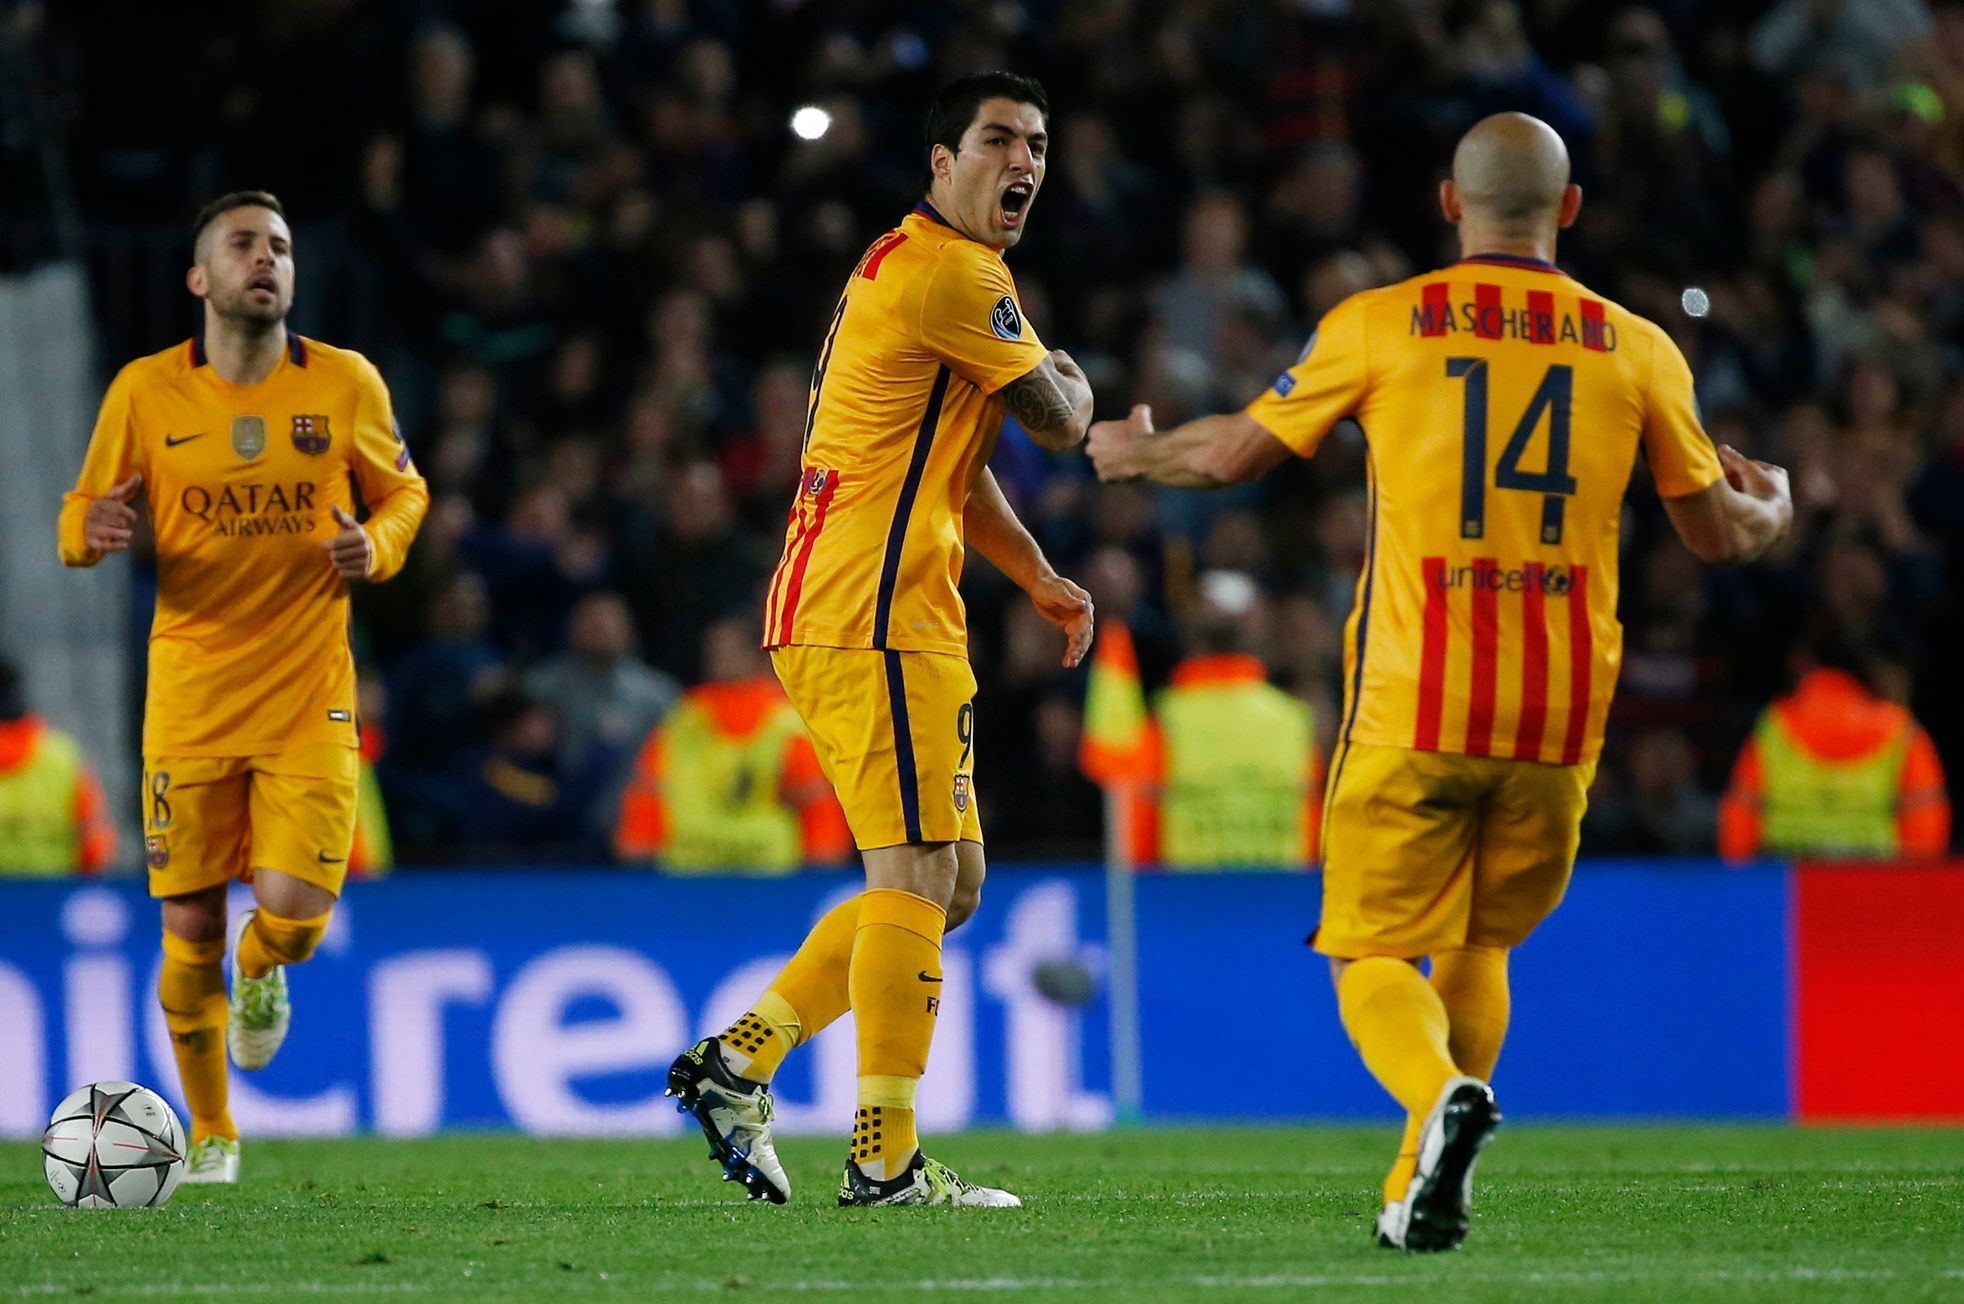 FC Barcelona-Atlético Madrid: Luis Suárez a Javier Mascherano (14) slaví gól